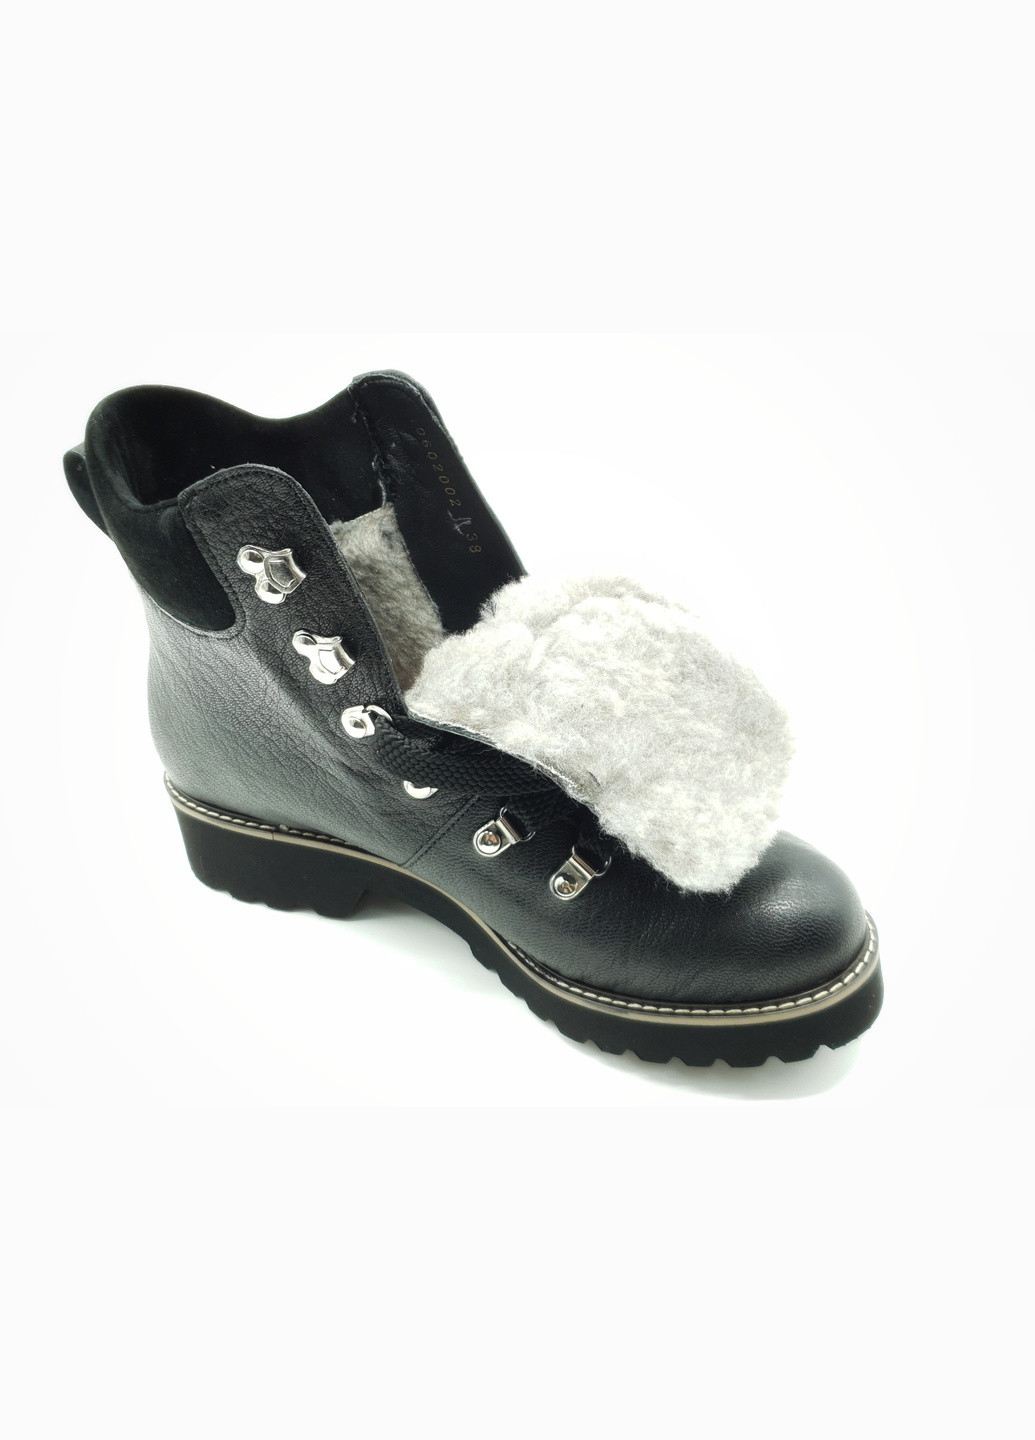 Жіночі черевики зимові чорні шкіряні P-10-1 25 см (р) patterns (259299740)